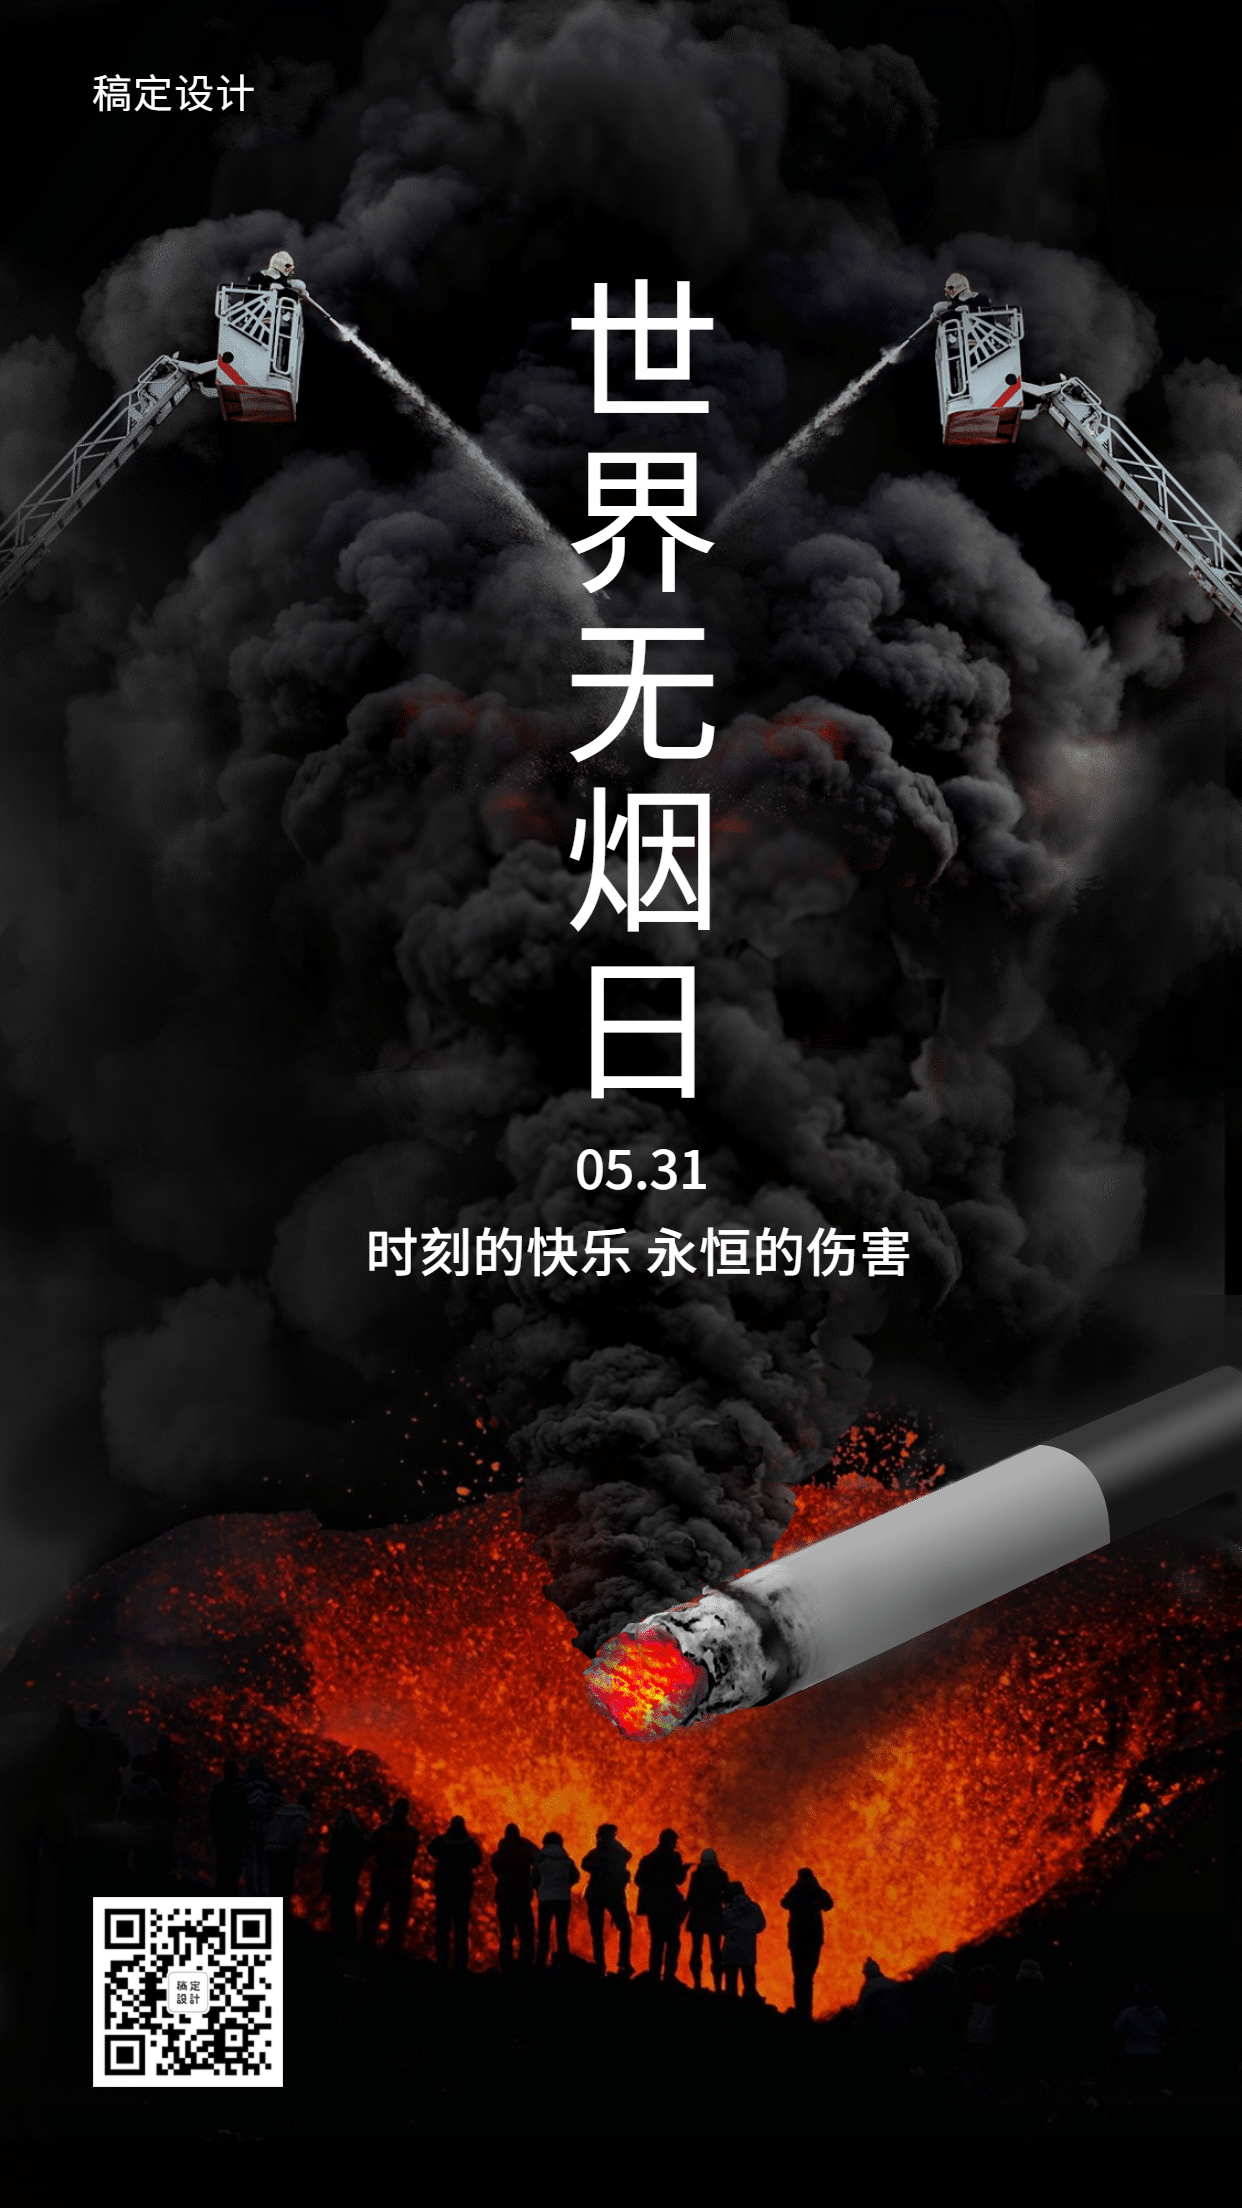 世界无烟日公益宣传手机海报预览效果